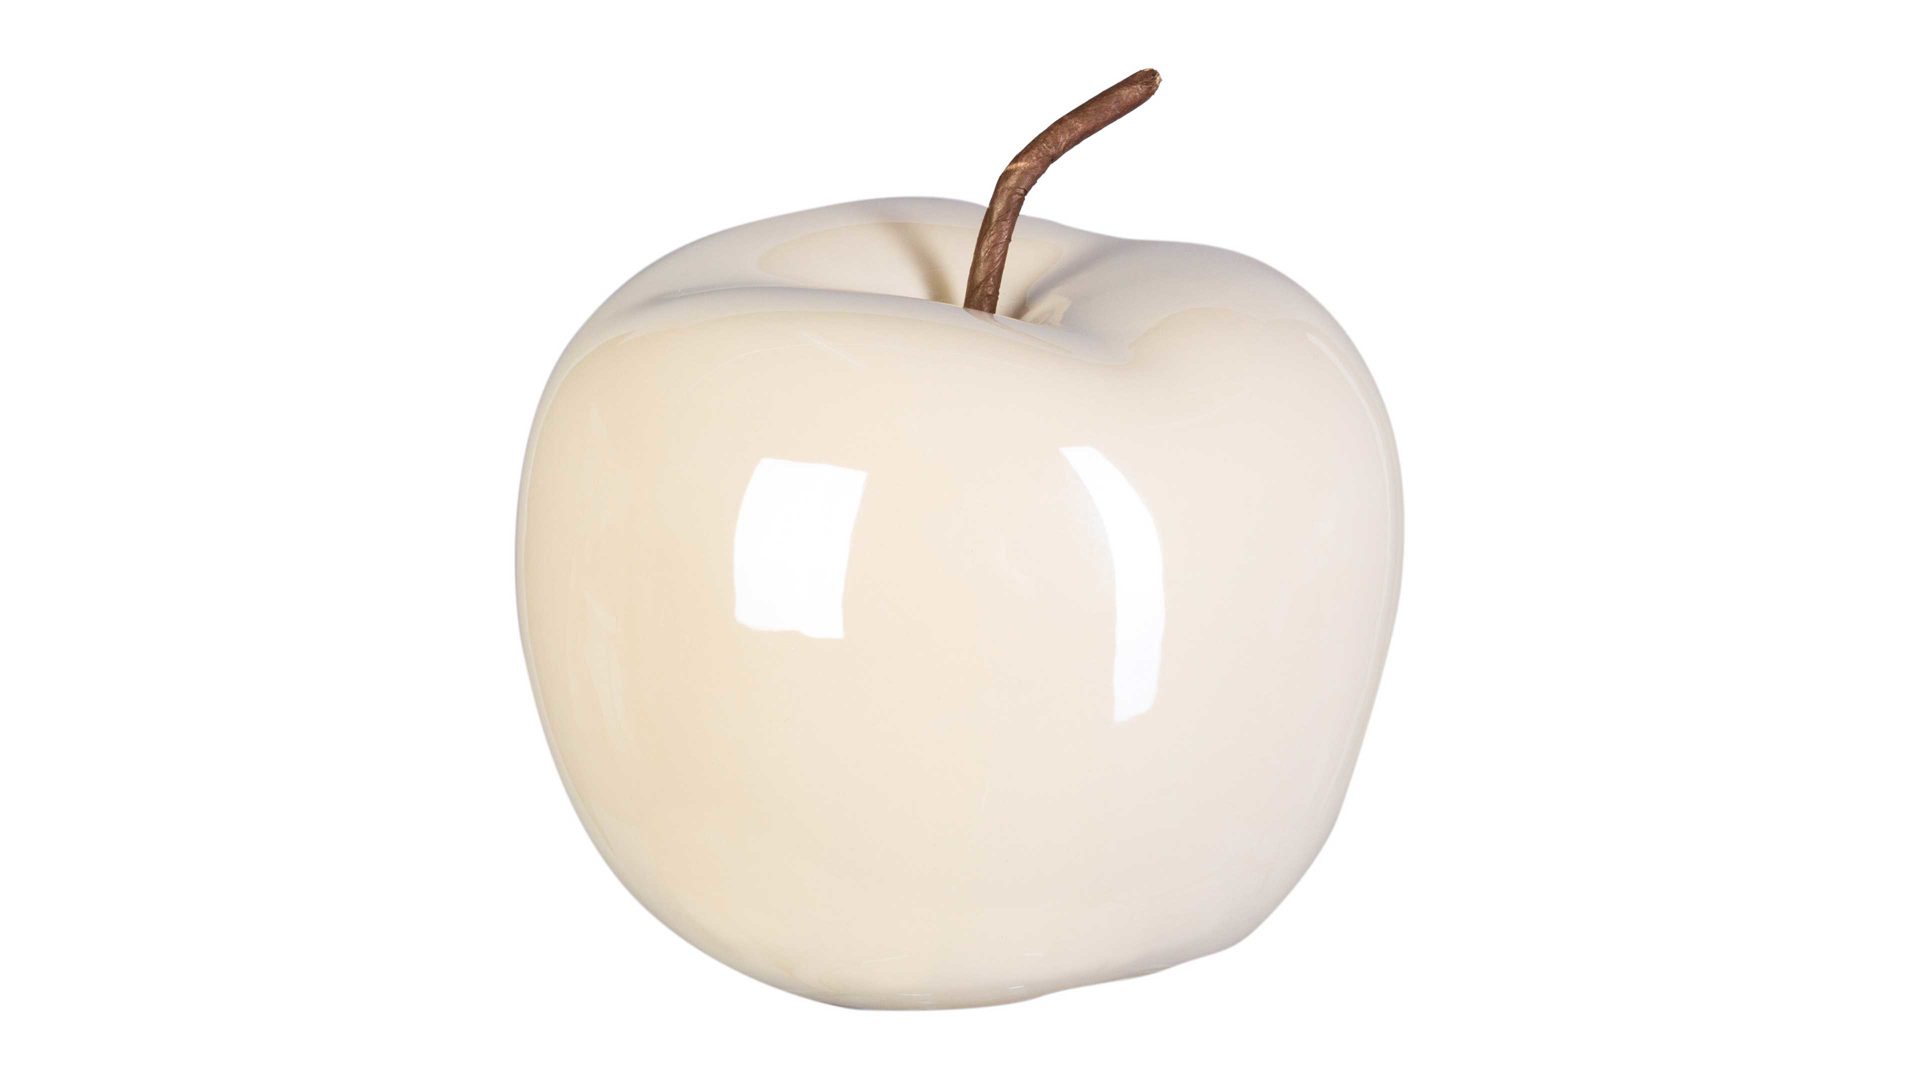 Figur Gasper aus Keramik in Beige Keramik-Apfel Glorian cremefarbene Keramik – Durchmesser ca. 15 cm